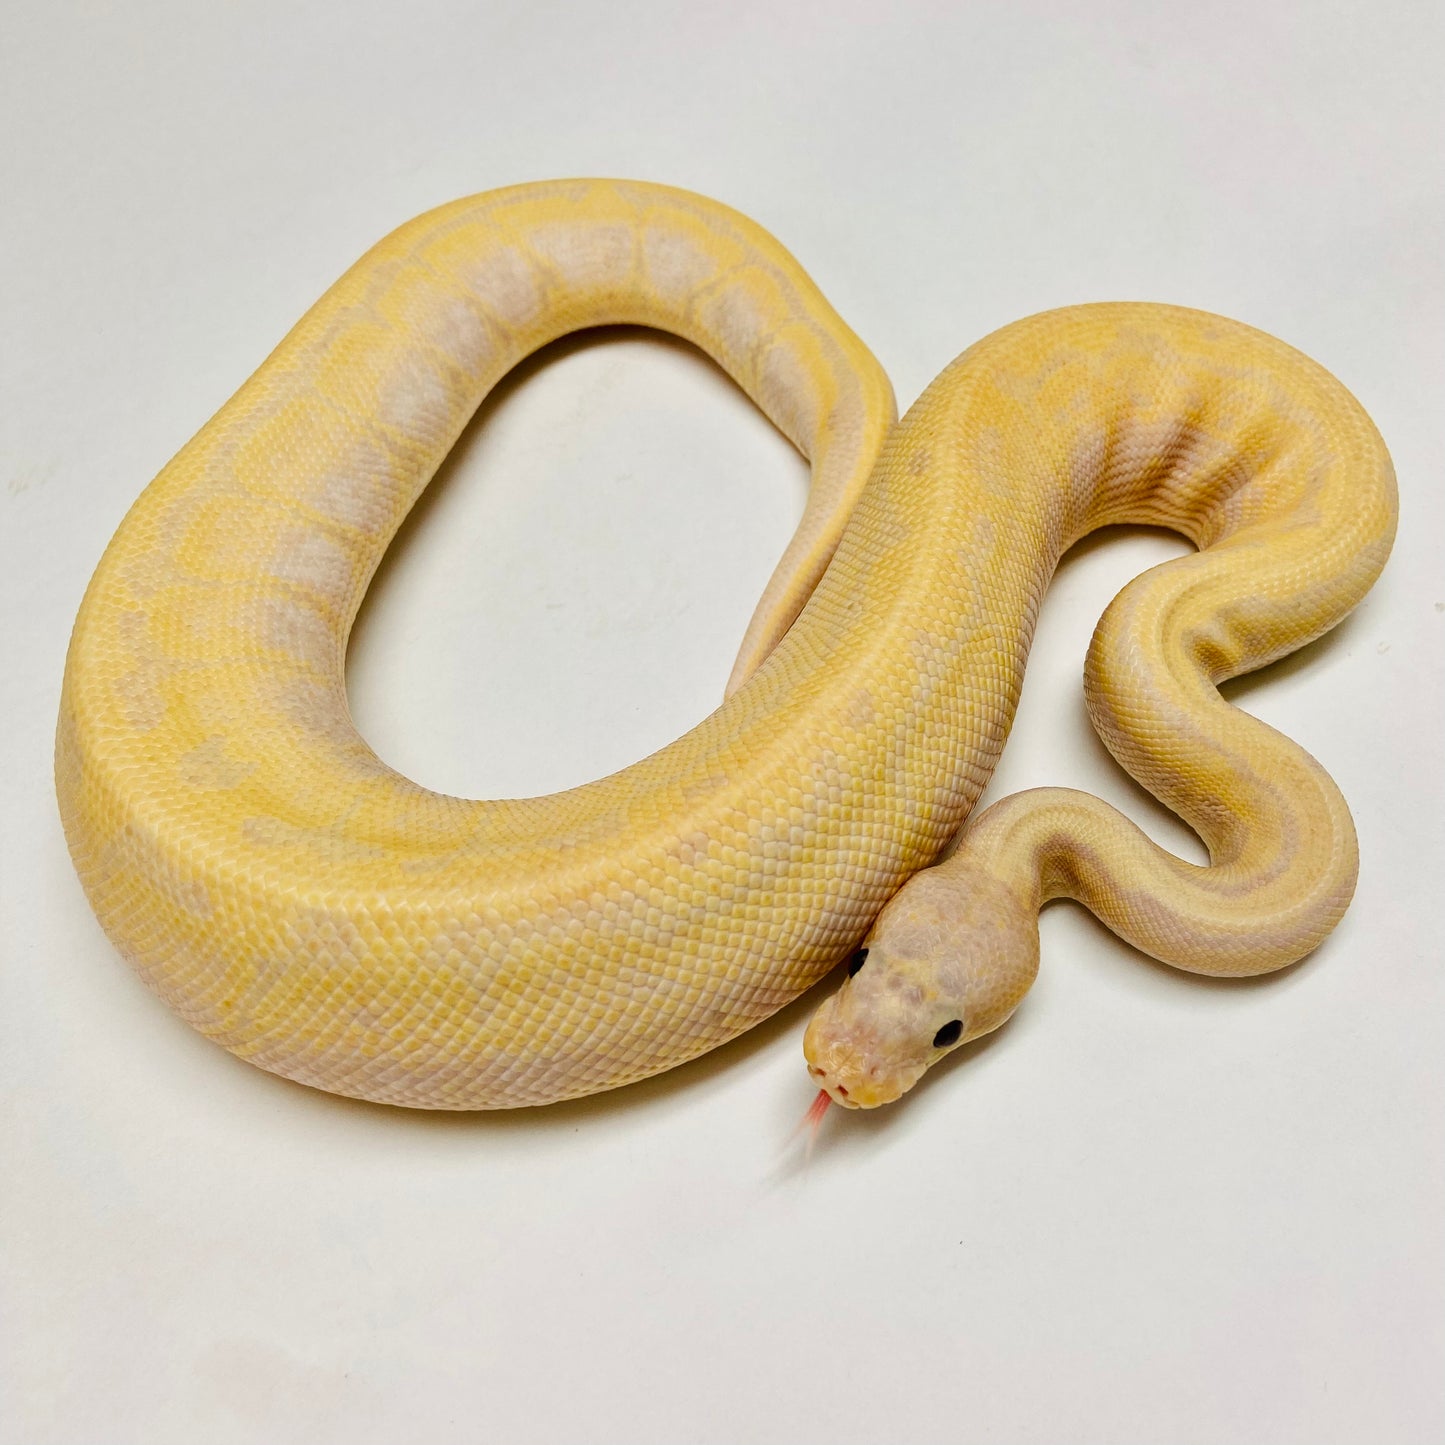 Super Banana Enchi Lori Pinstripe Ball Python - Male #2022M01